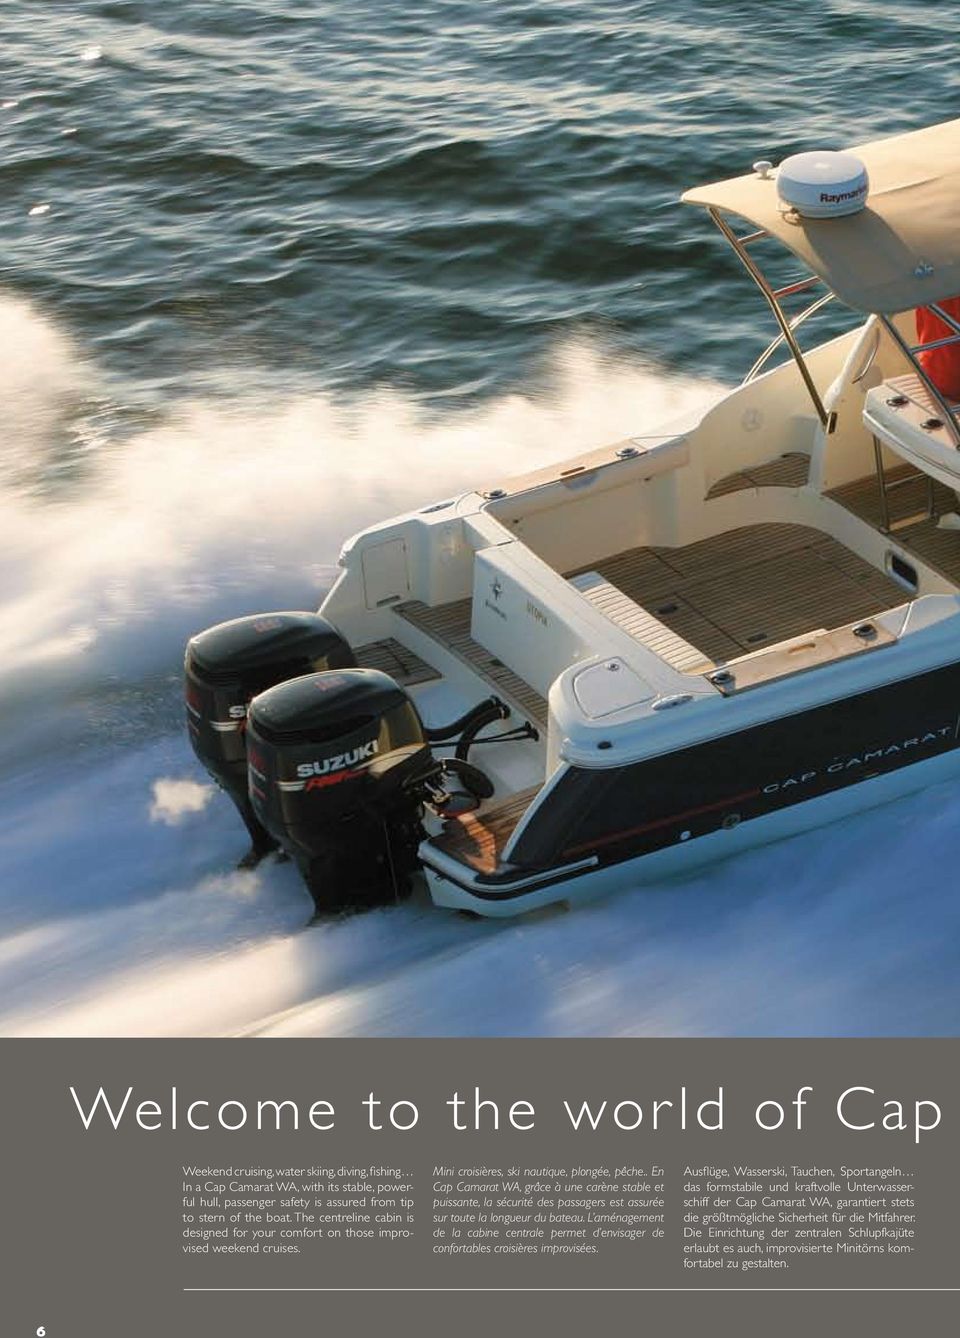 . En Cap Camarat WA, grâce à une carène stable et puissante, la sécurité des passagers est assurée sur toute la longueur du bateau.